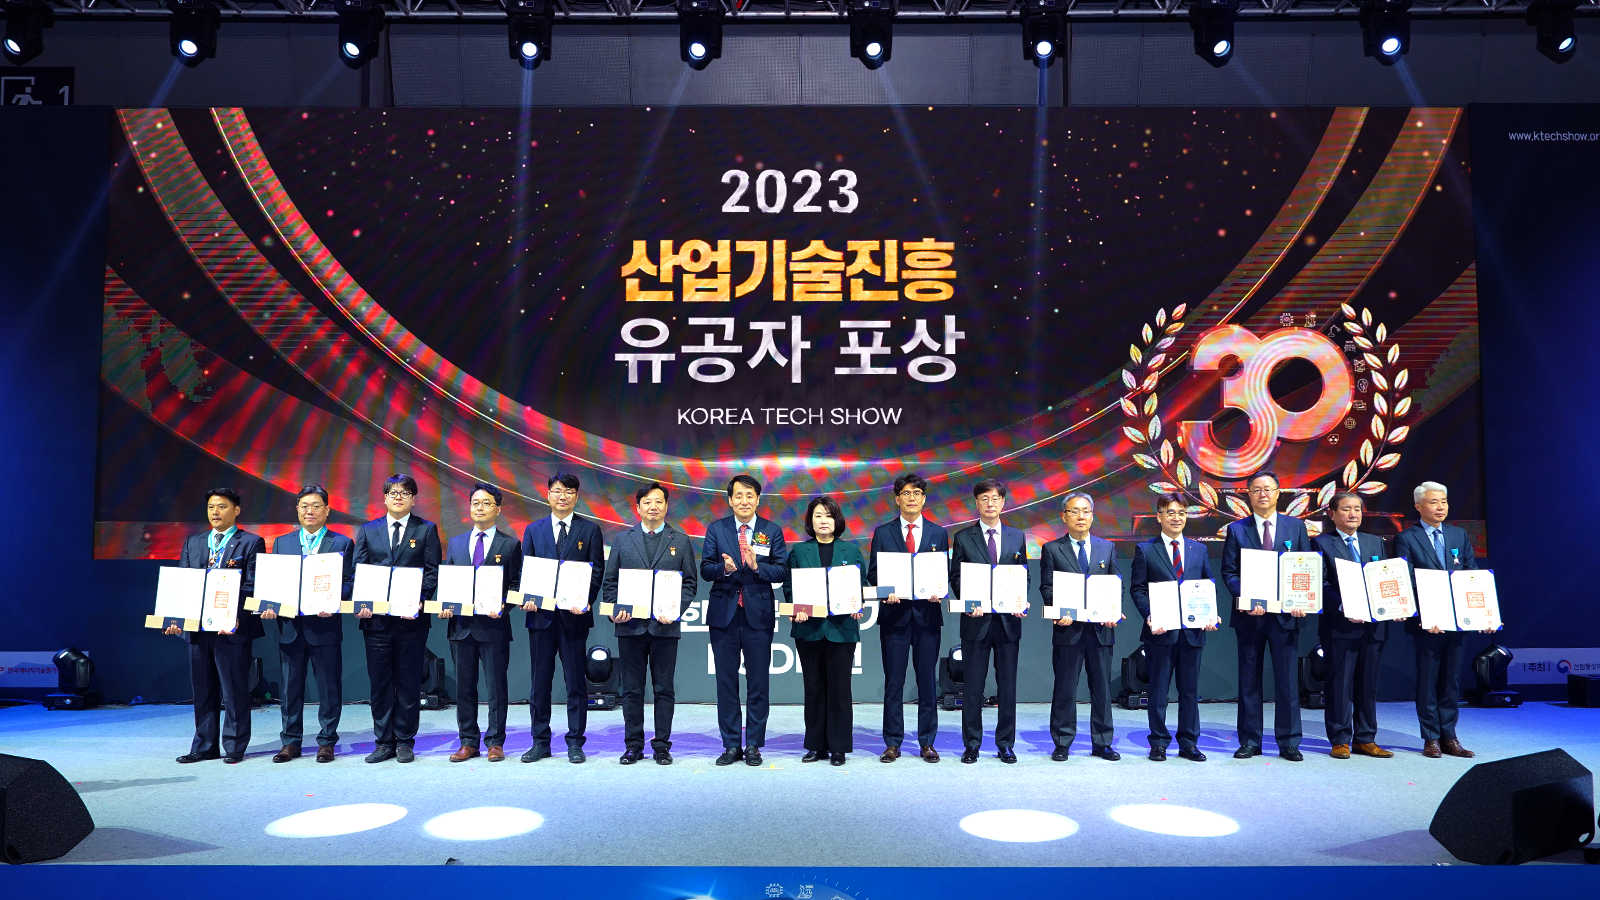 12월 6일 열린 산업통상자원부 주관 2023년 대한민국 산업기술 R&D 대전에서 조경구 팀장이 산업기술진흥 유공 대통령 표창을 받았다(왼쪽에서 세 번째).